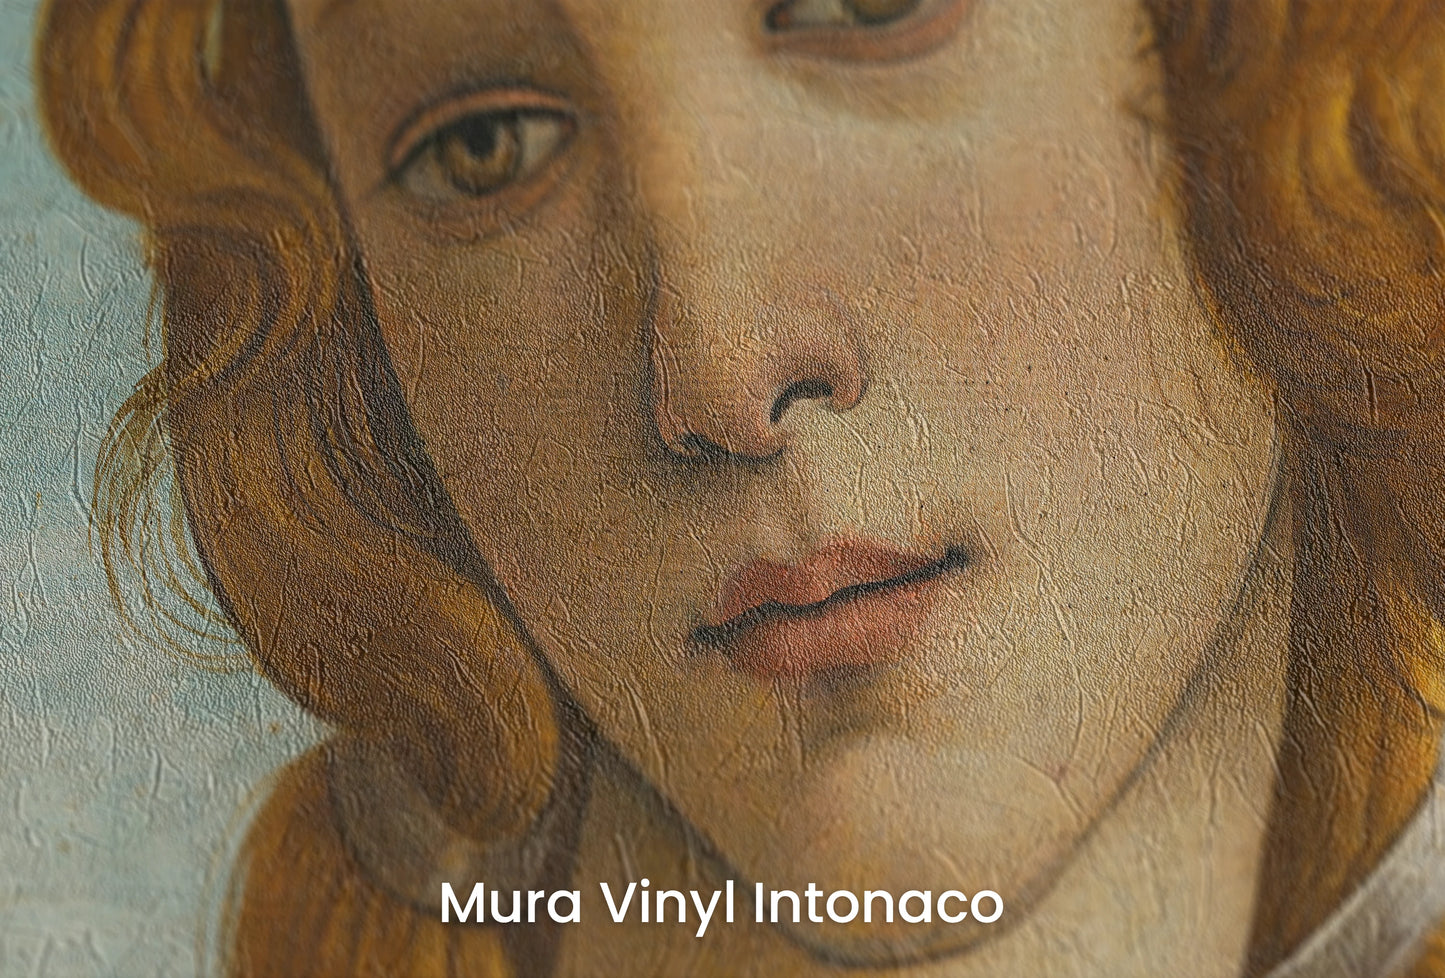 Reprodukcja 'Narodzin Wenus' autorstwa Sandro Botticellego w ultrawysokiej rozdzielczości 37740 x 23701 pikseli, przedstawiająca Wenus stojącą na muszli, otoczoną przez postacie i roślinność - wycinek na podłożu Mura Vinyl Intonaco - podłożu o fakturze tynku